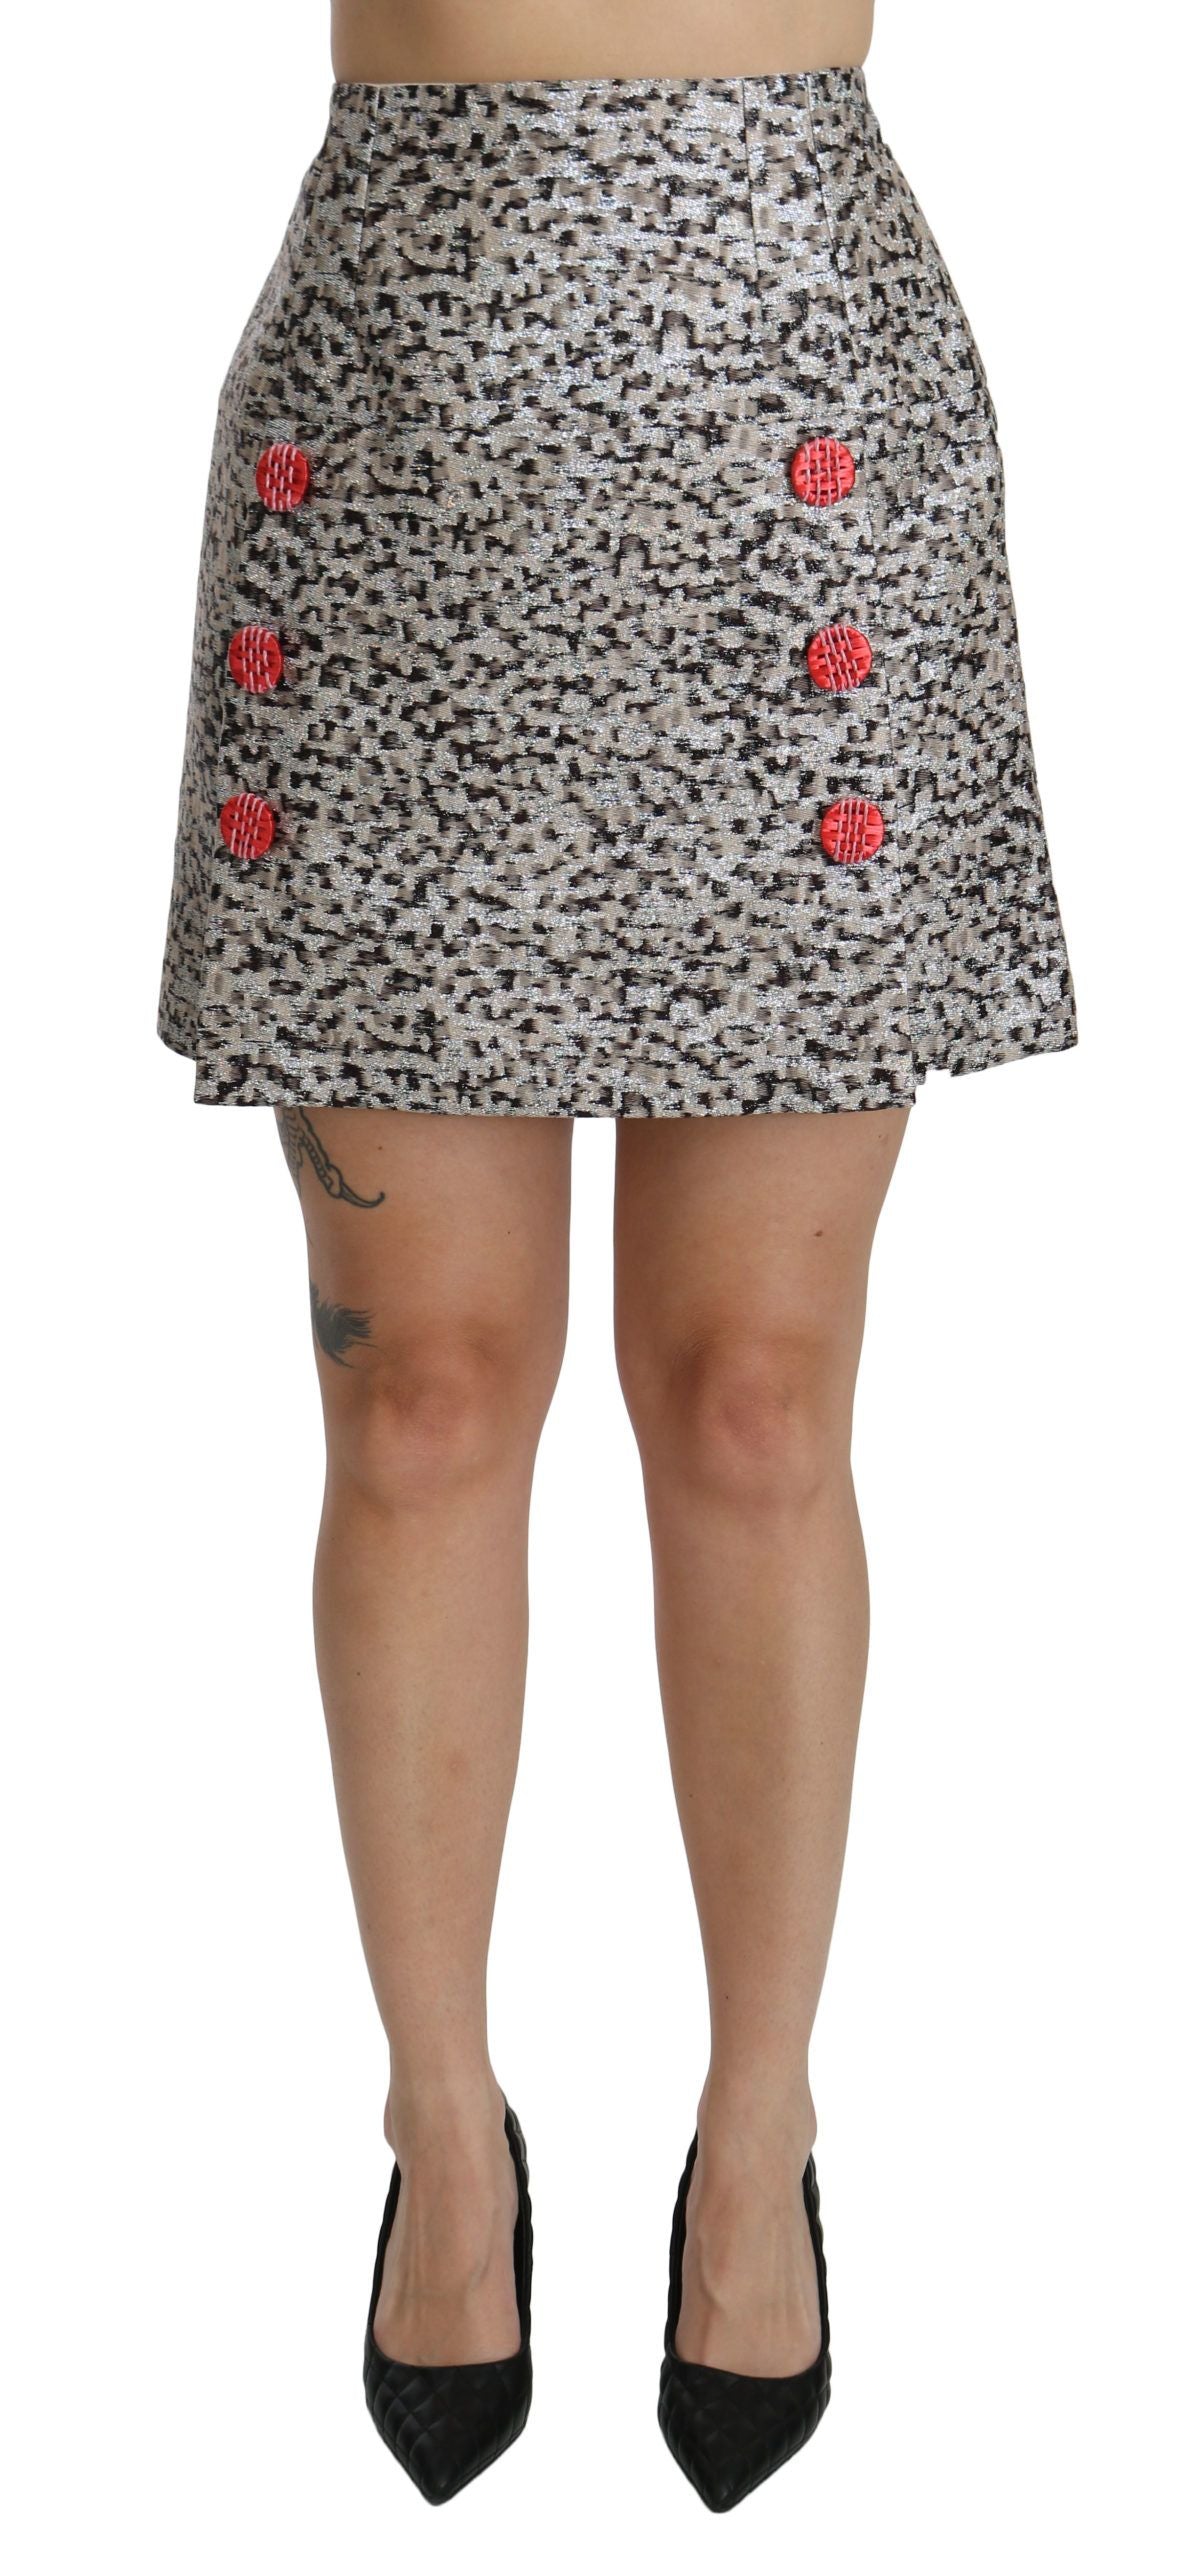 Dolce & Gabbana Silver Pattern A-line High Waist Skirt